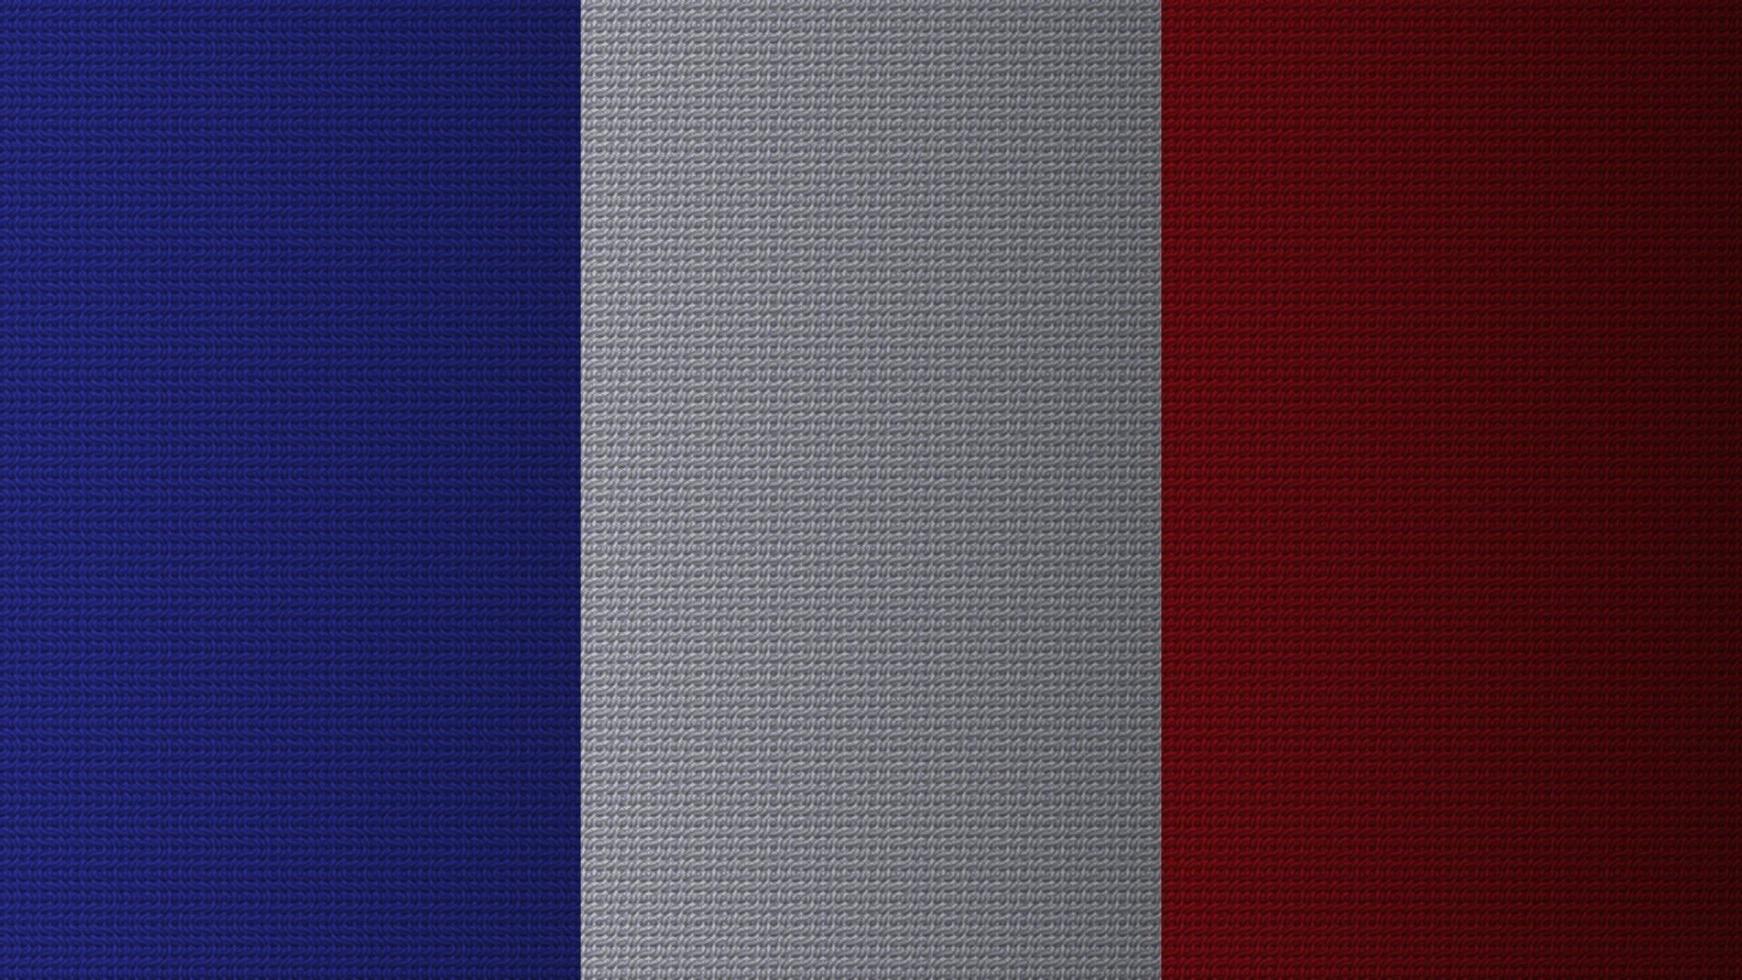 la bandera nacional de francia. el tricolor de francia. papel tapiz de bandera nacional con patrón de onda, estilo degradado de puntos y sombras. vector